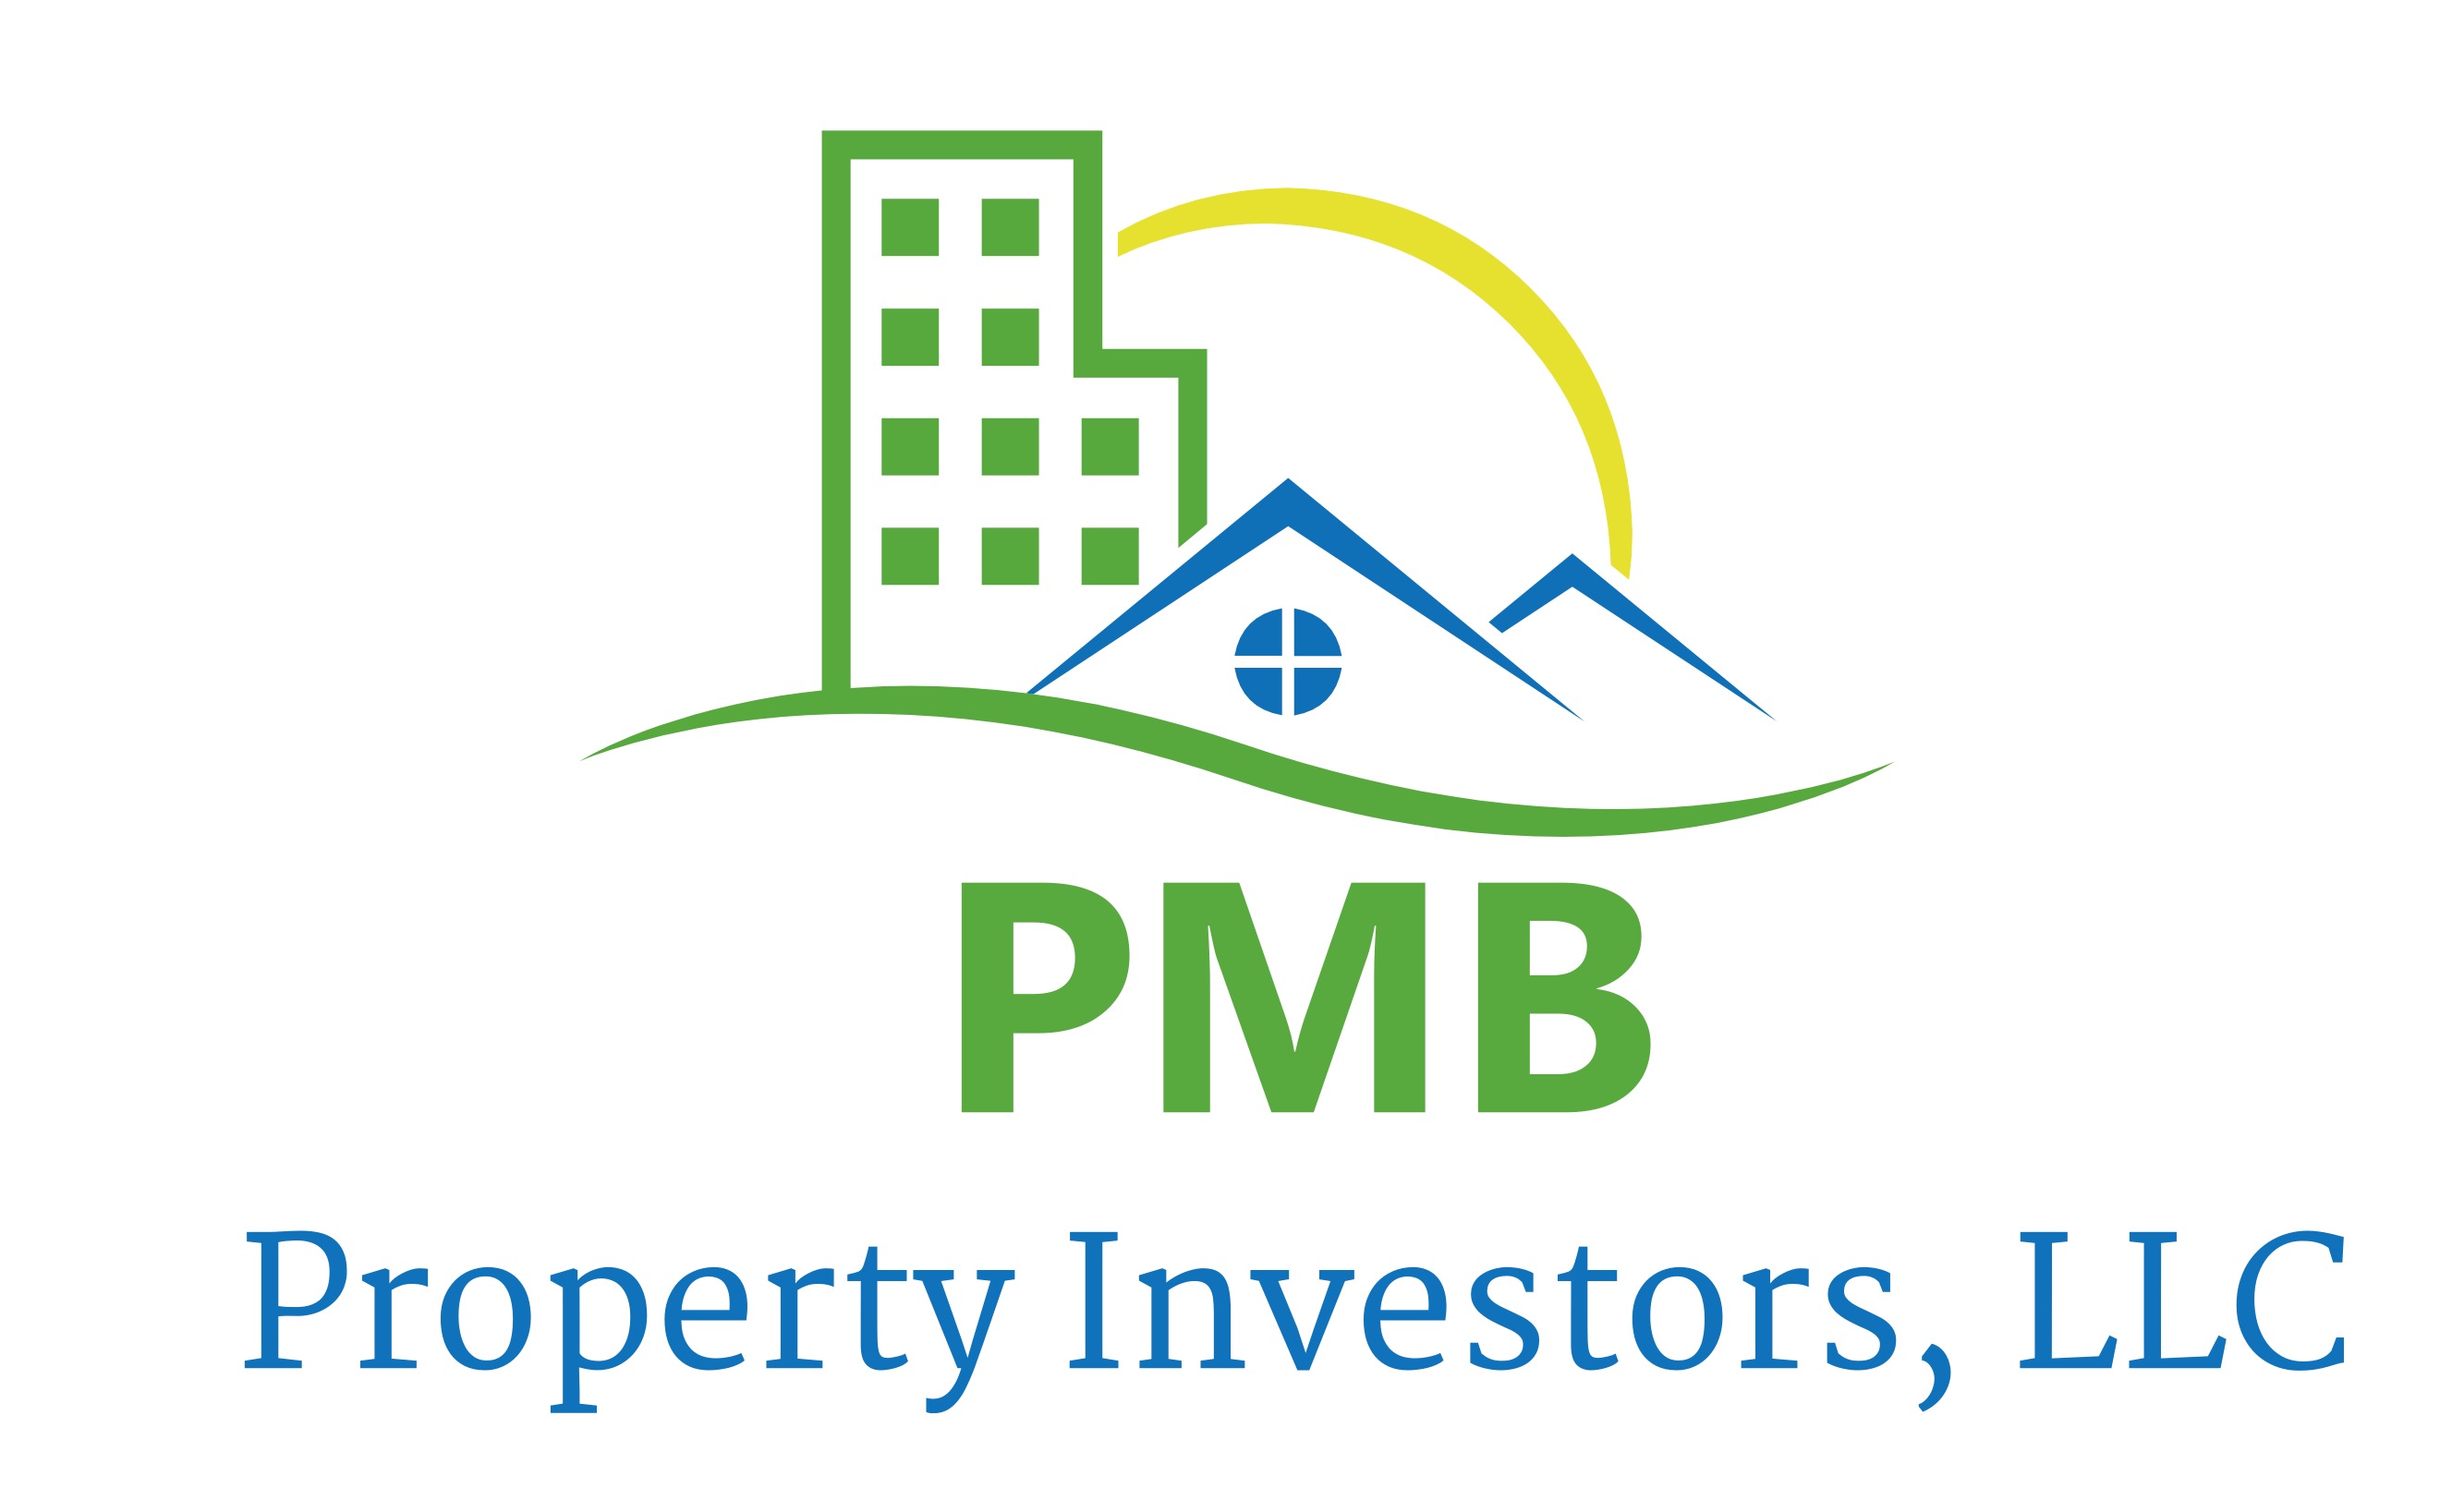 PMB Property Investors, LLC